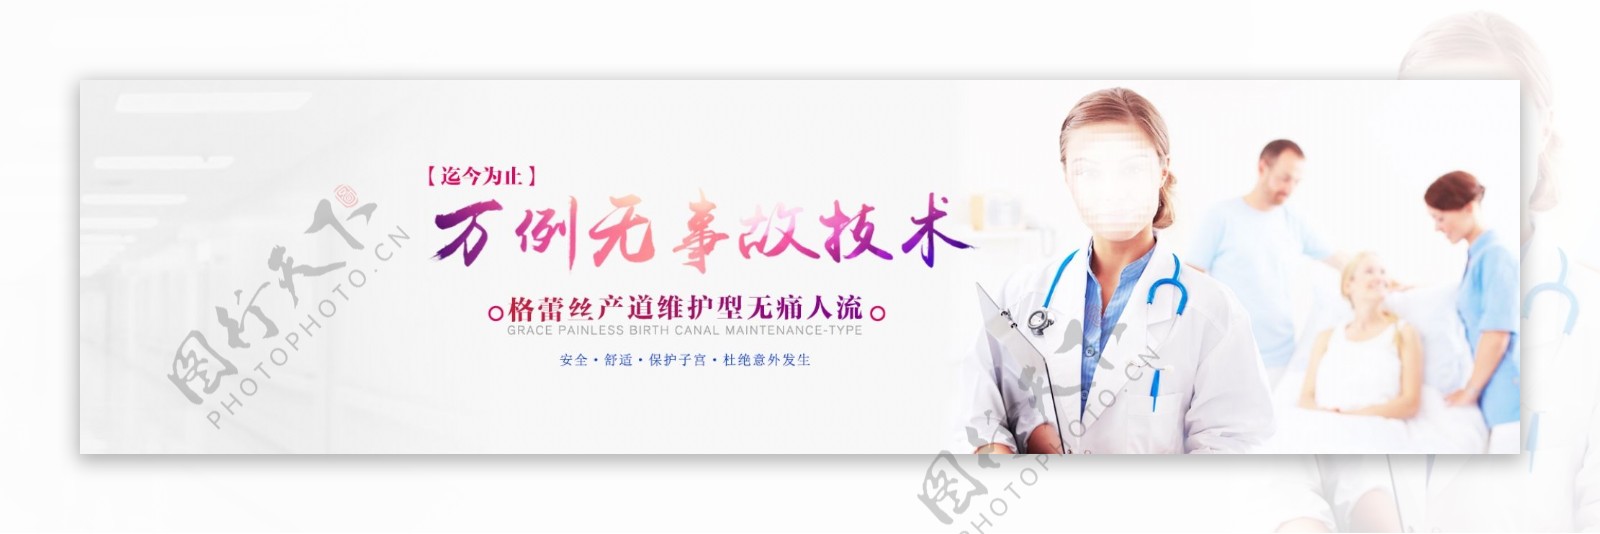 妇科医院网站banner